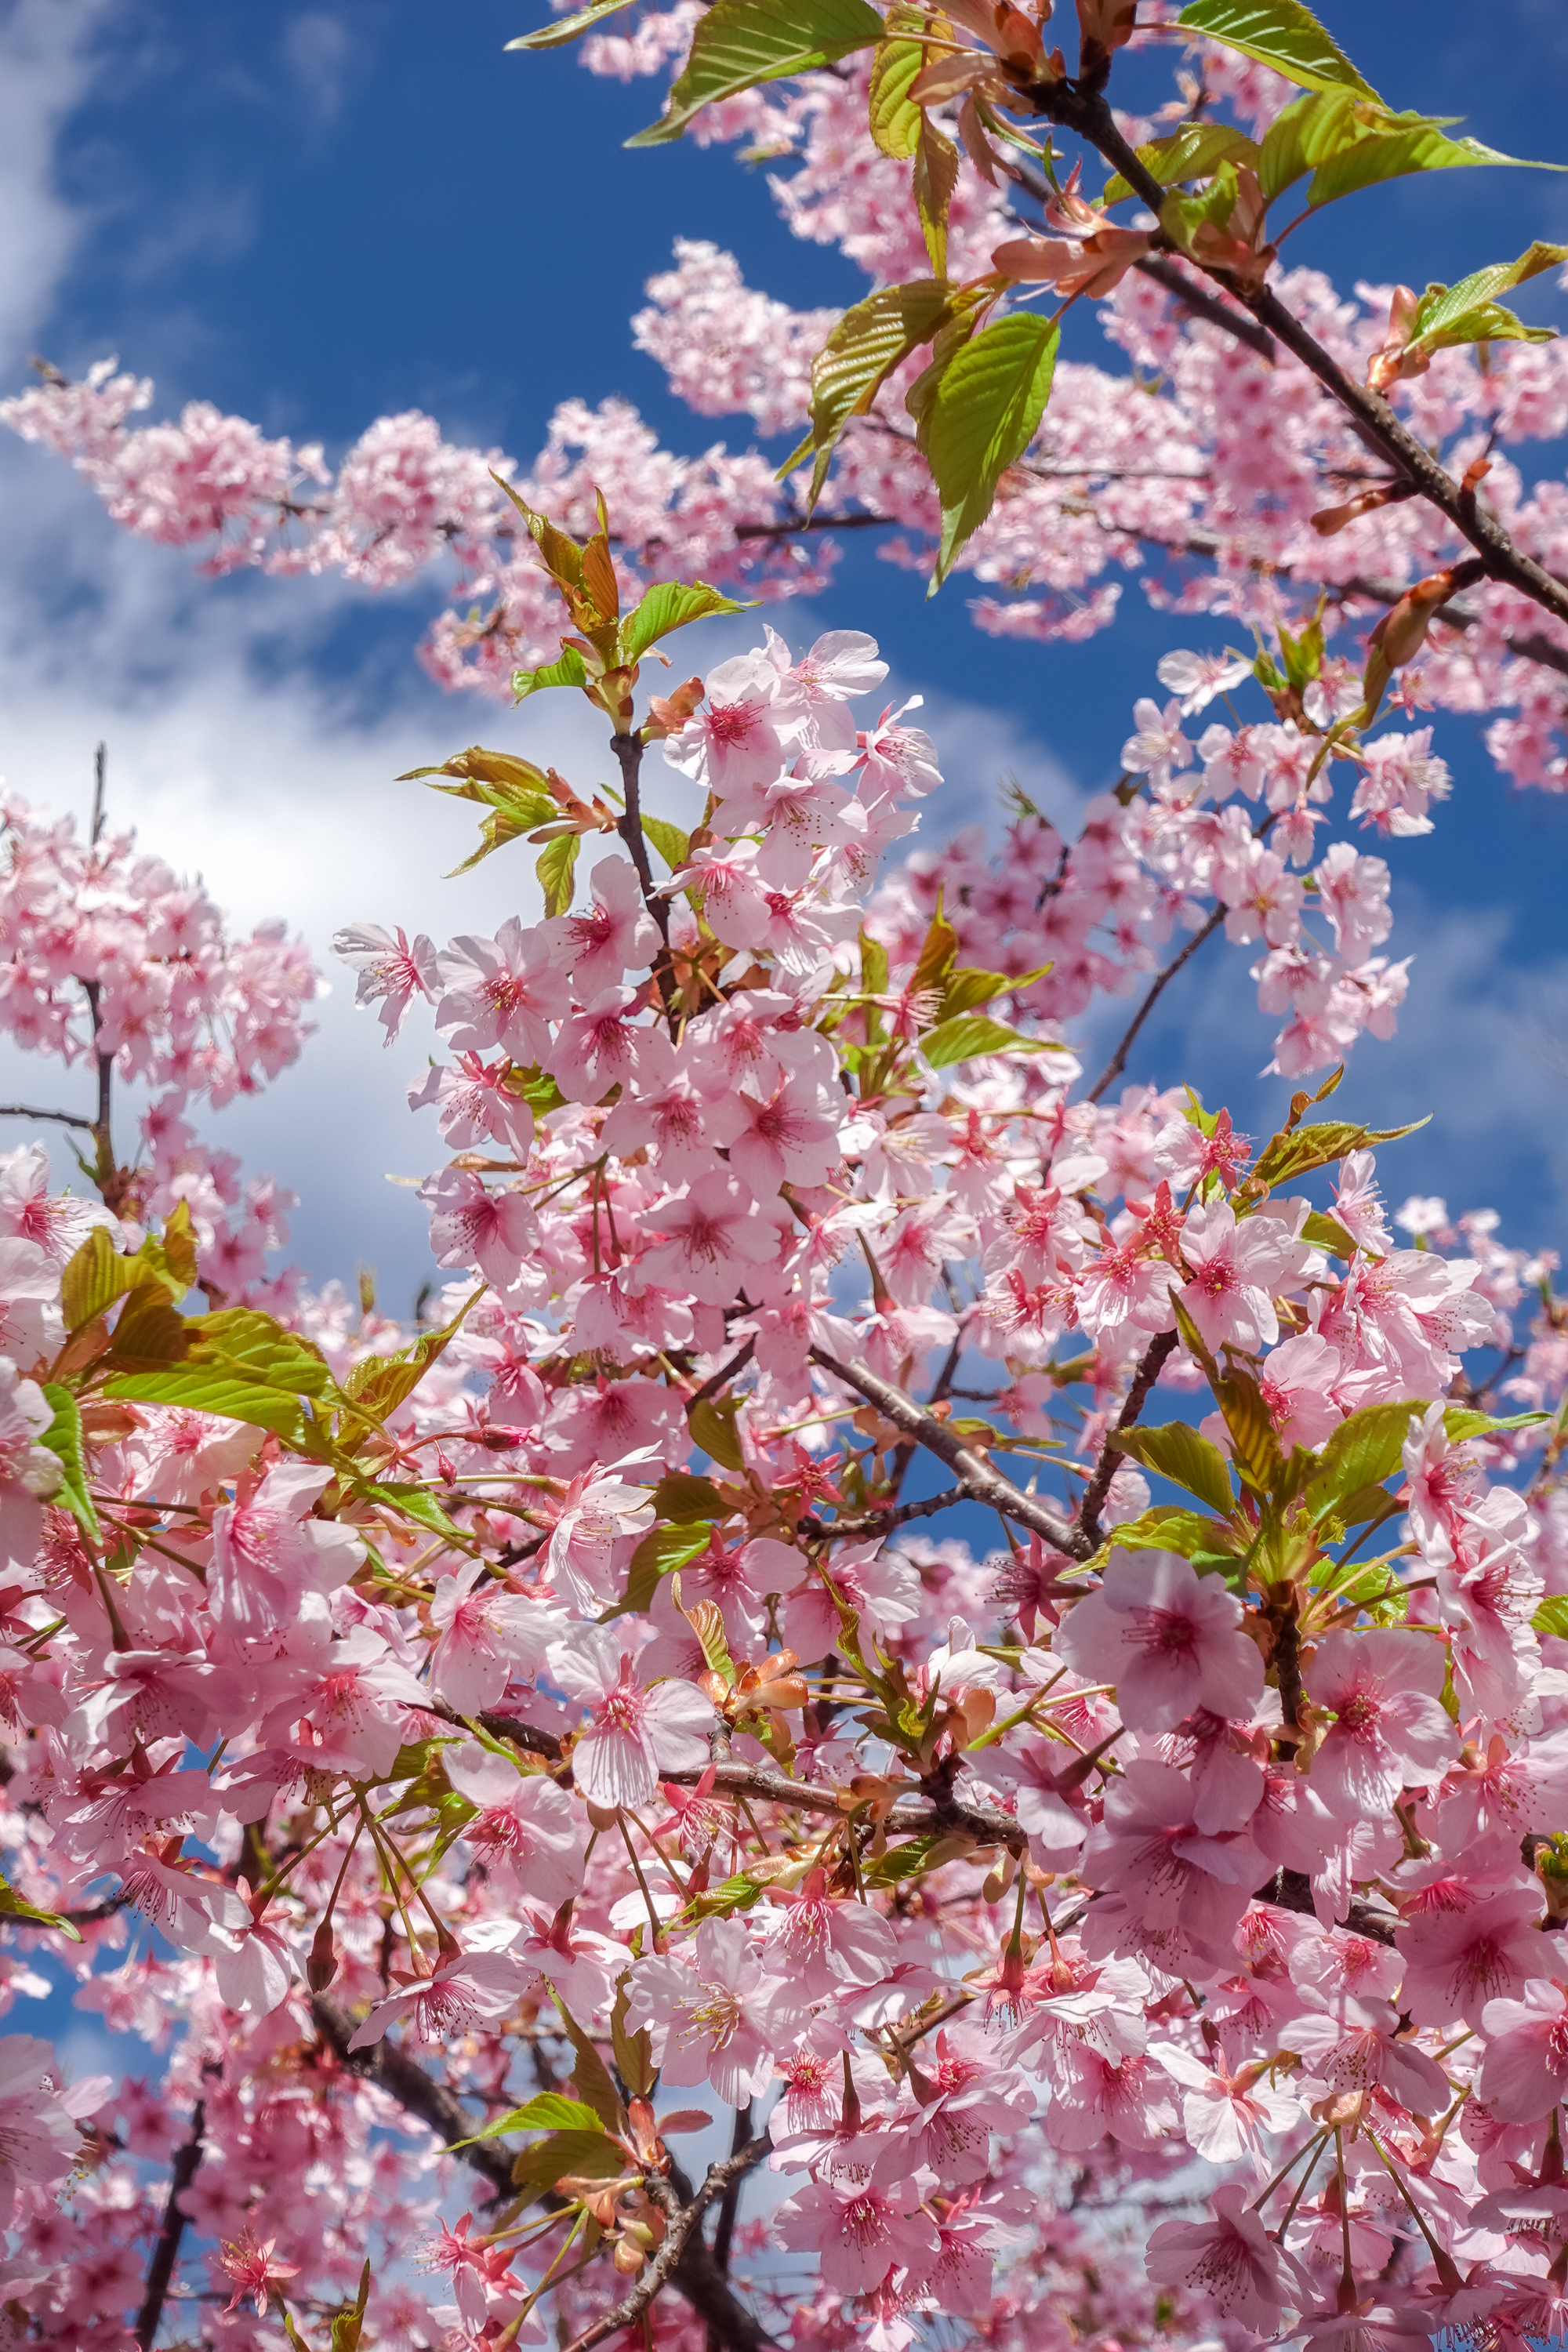 京都府 淀水路の河津桜 京都でいち早く桜が満開になるおすすめの河津桜写真スポット 撮影した写真の紹介 アクセス方法や駐車場など 写真や映像で紹介する関西 近畿の絶景カメラ 観光スポット